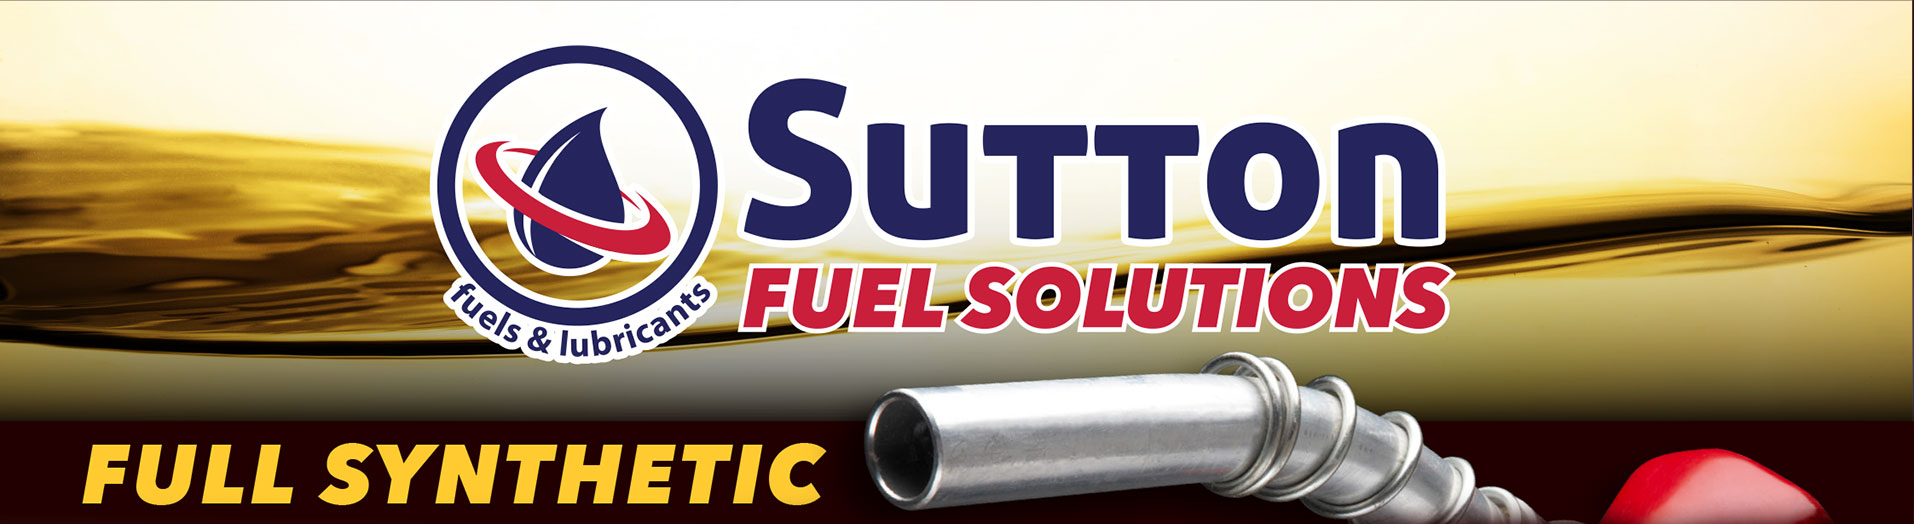 Sutton-Fuel-Solutions-Fuel-Treatments